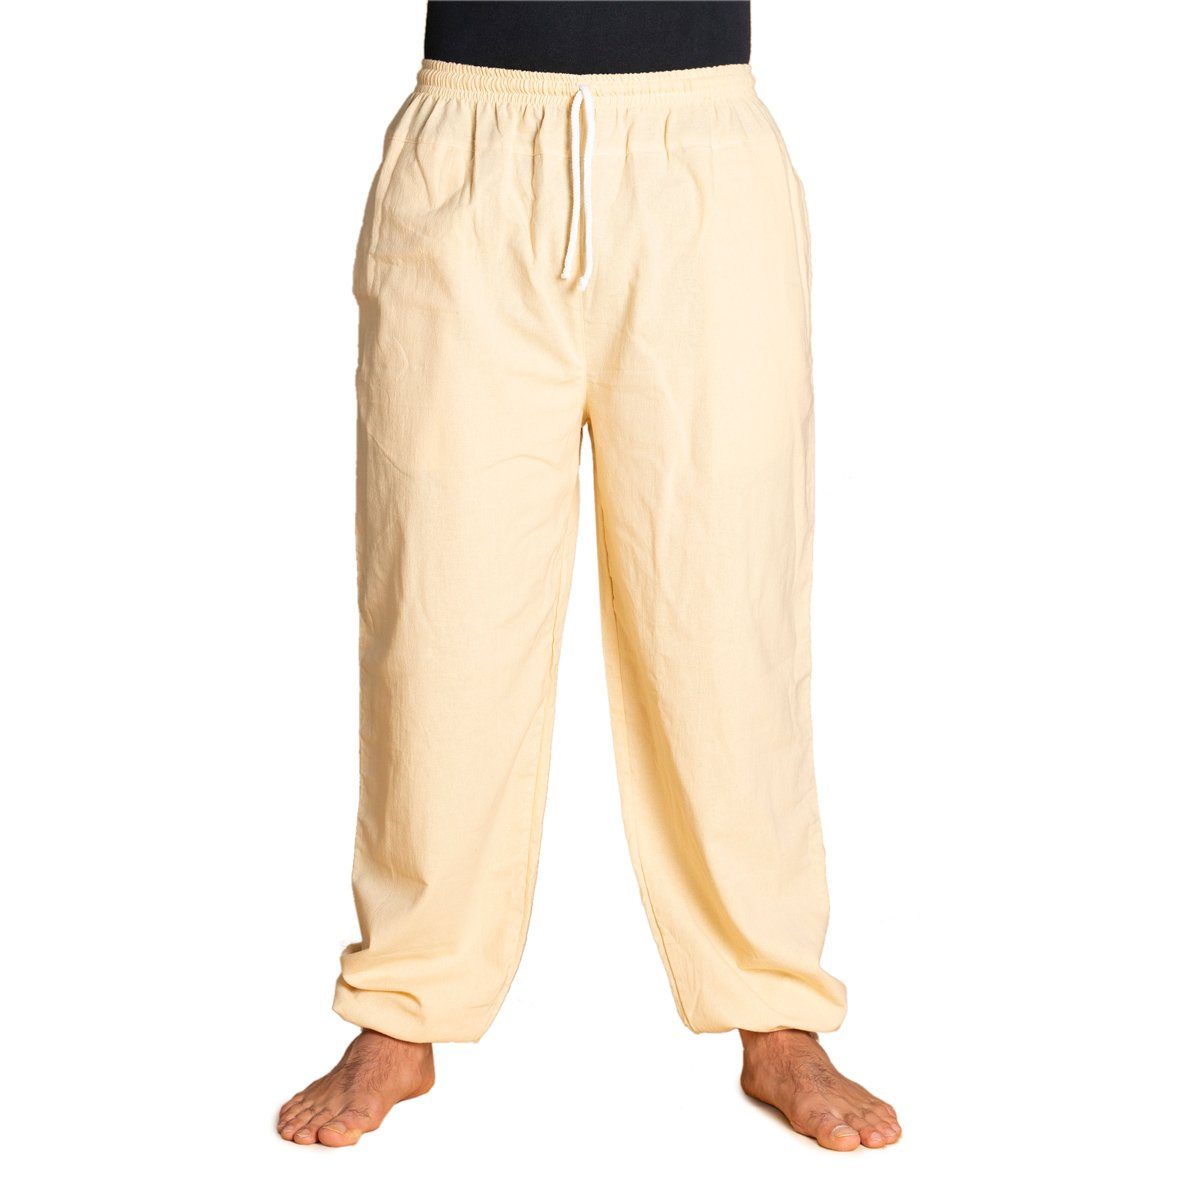 PANASIAM Wellnesshose E-Pants leichte Unisex Bundhose aus weicher Baumwolle für Damen und Herren Freizeithose mit Tunnelzug Relaxhose bequeme Sommerhose Beige